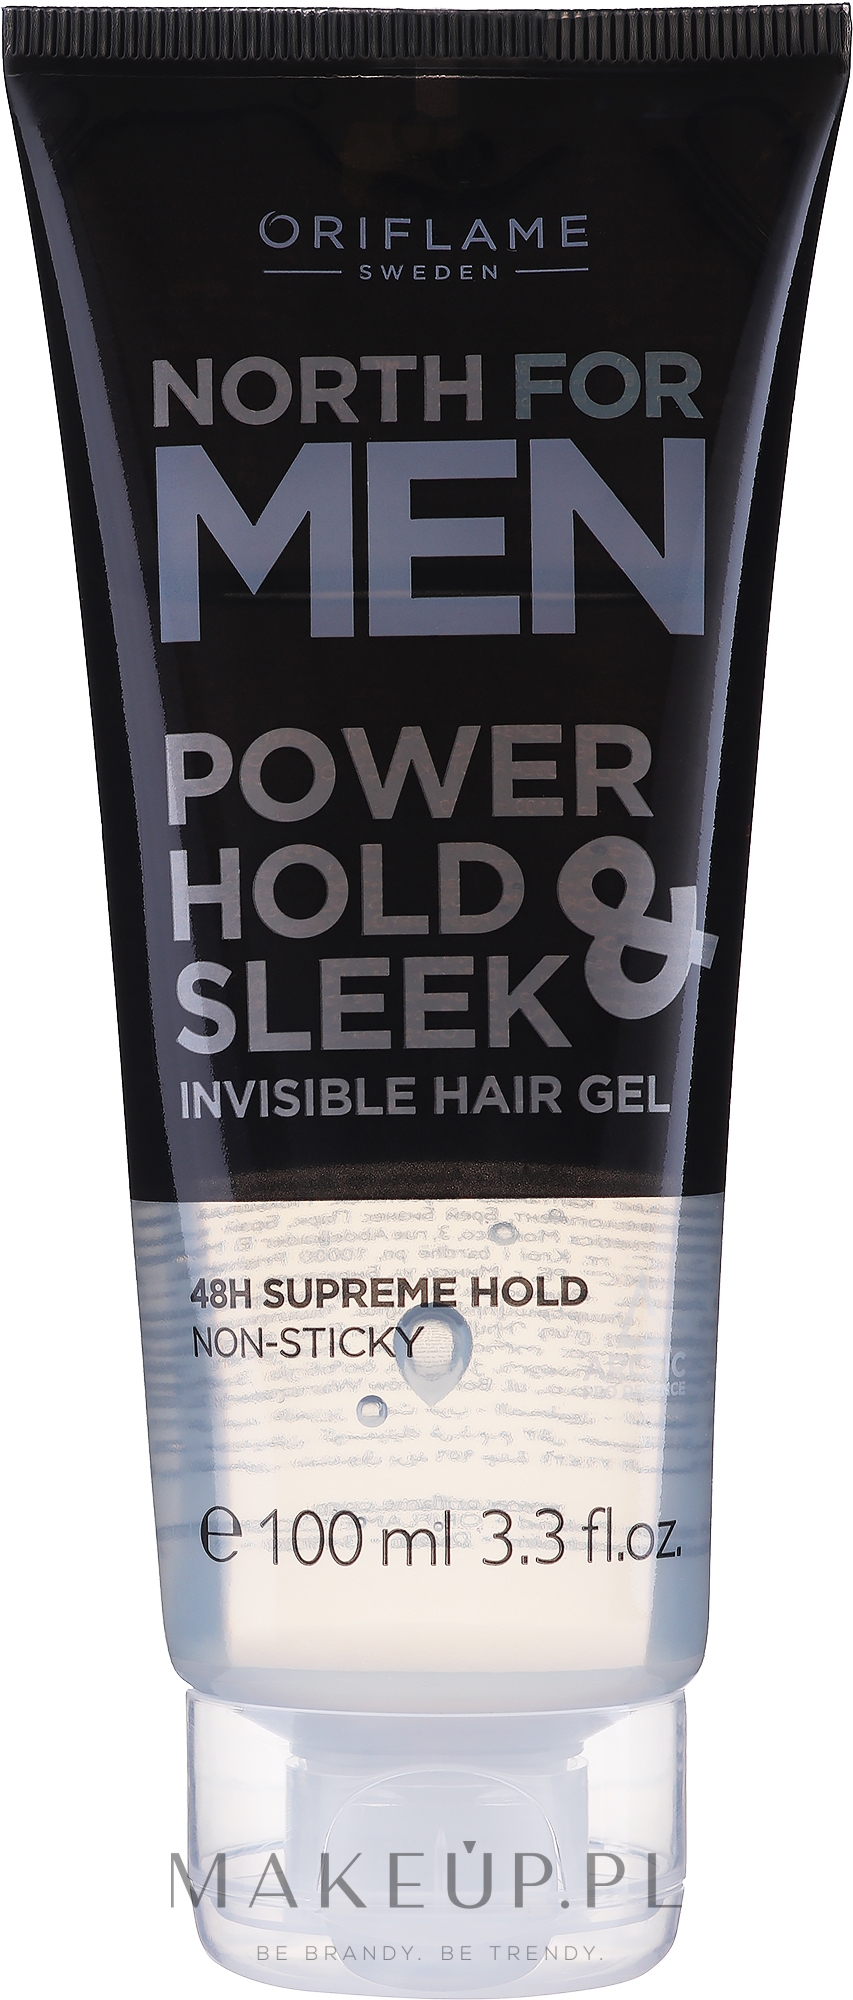 Niewidoczny żel do stylizacji włosów dla mężczyzn - Oriflame North For Men Power Hold & Sleek Invisible Hair Gel — Zdjęcie 100 ml